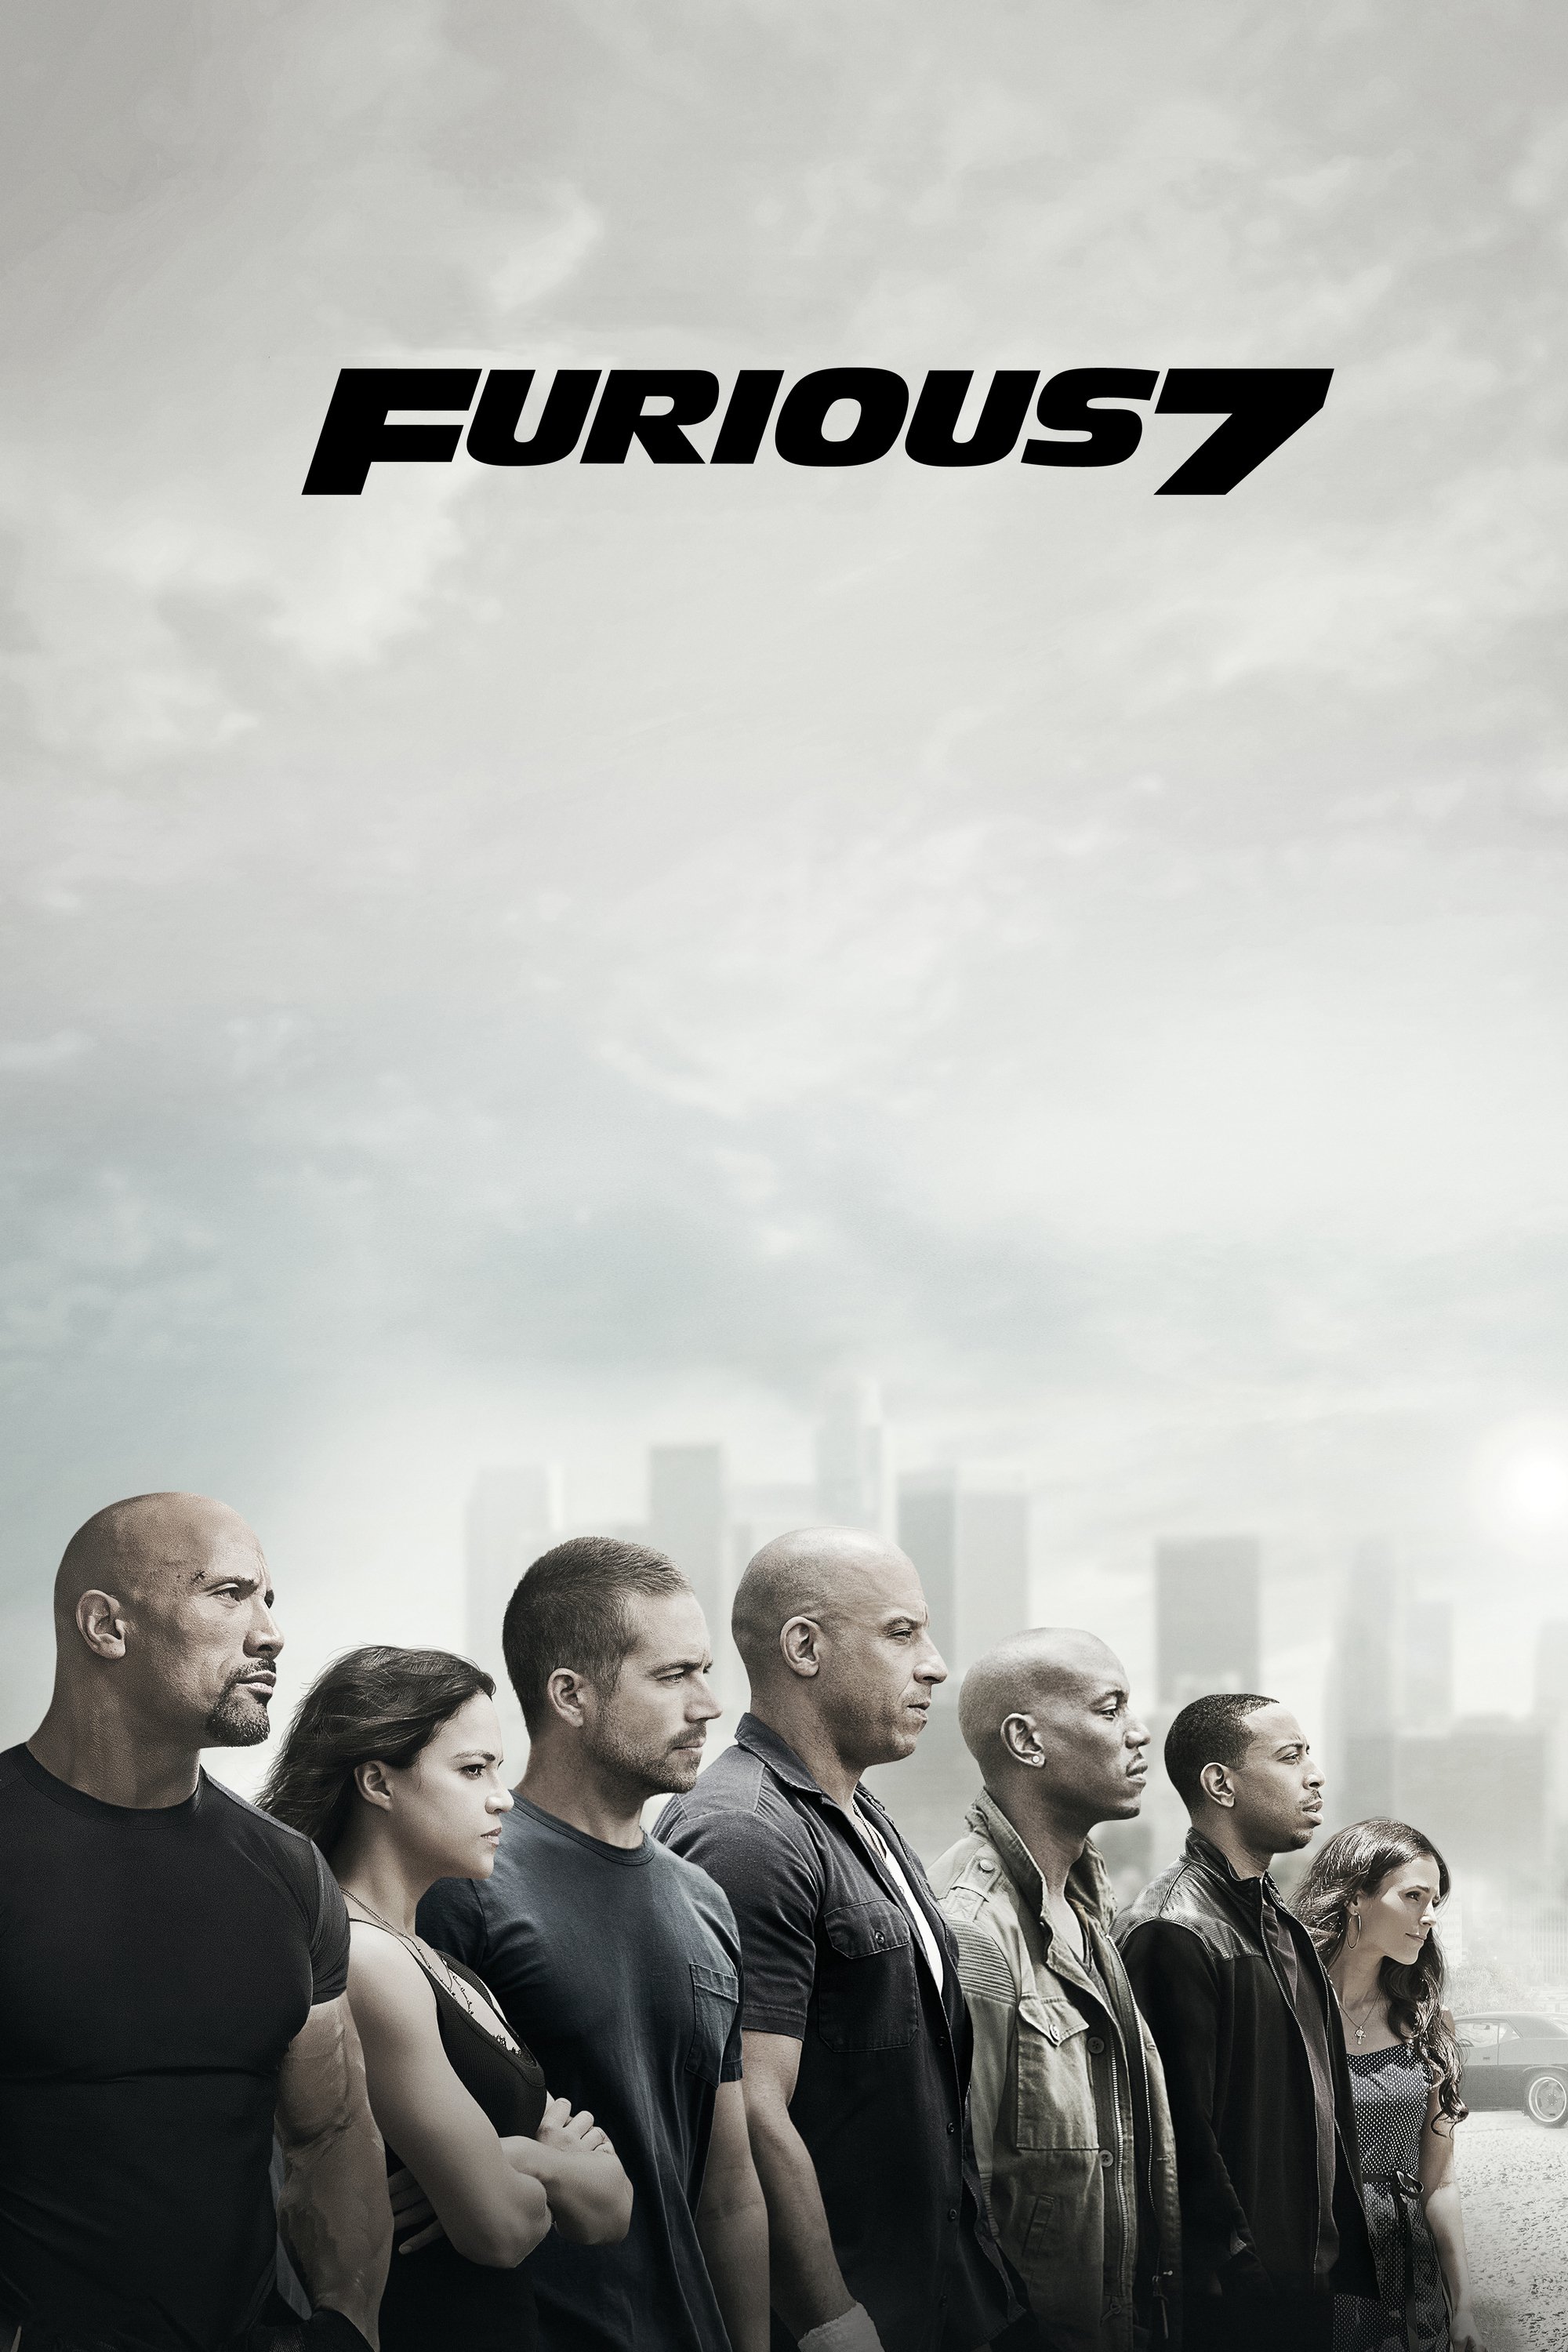 دانلود فیلم Furious 7 2015